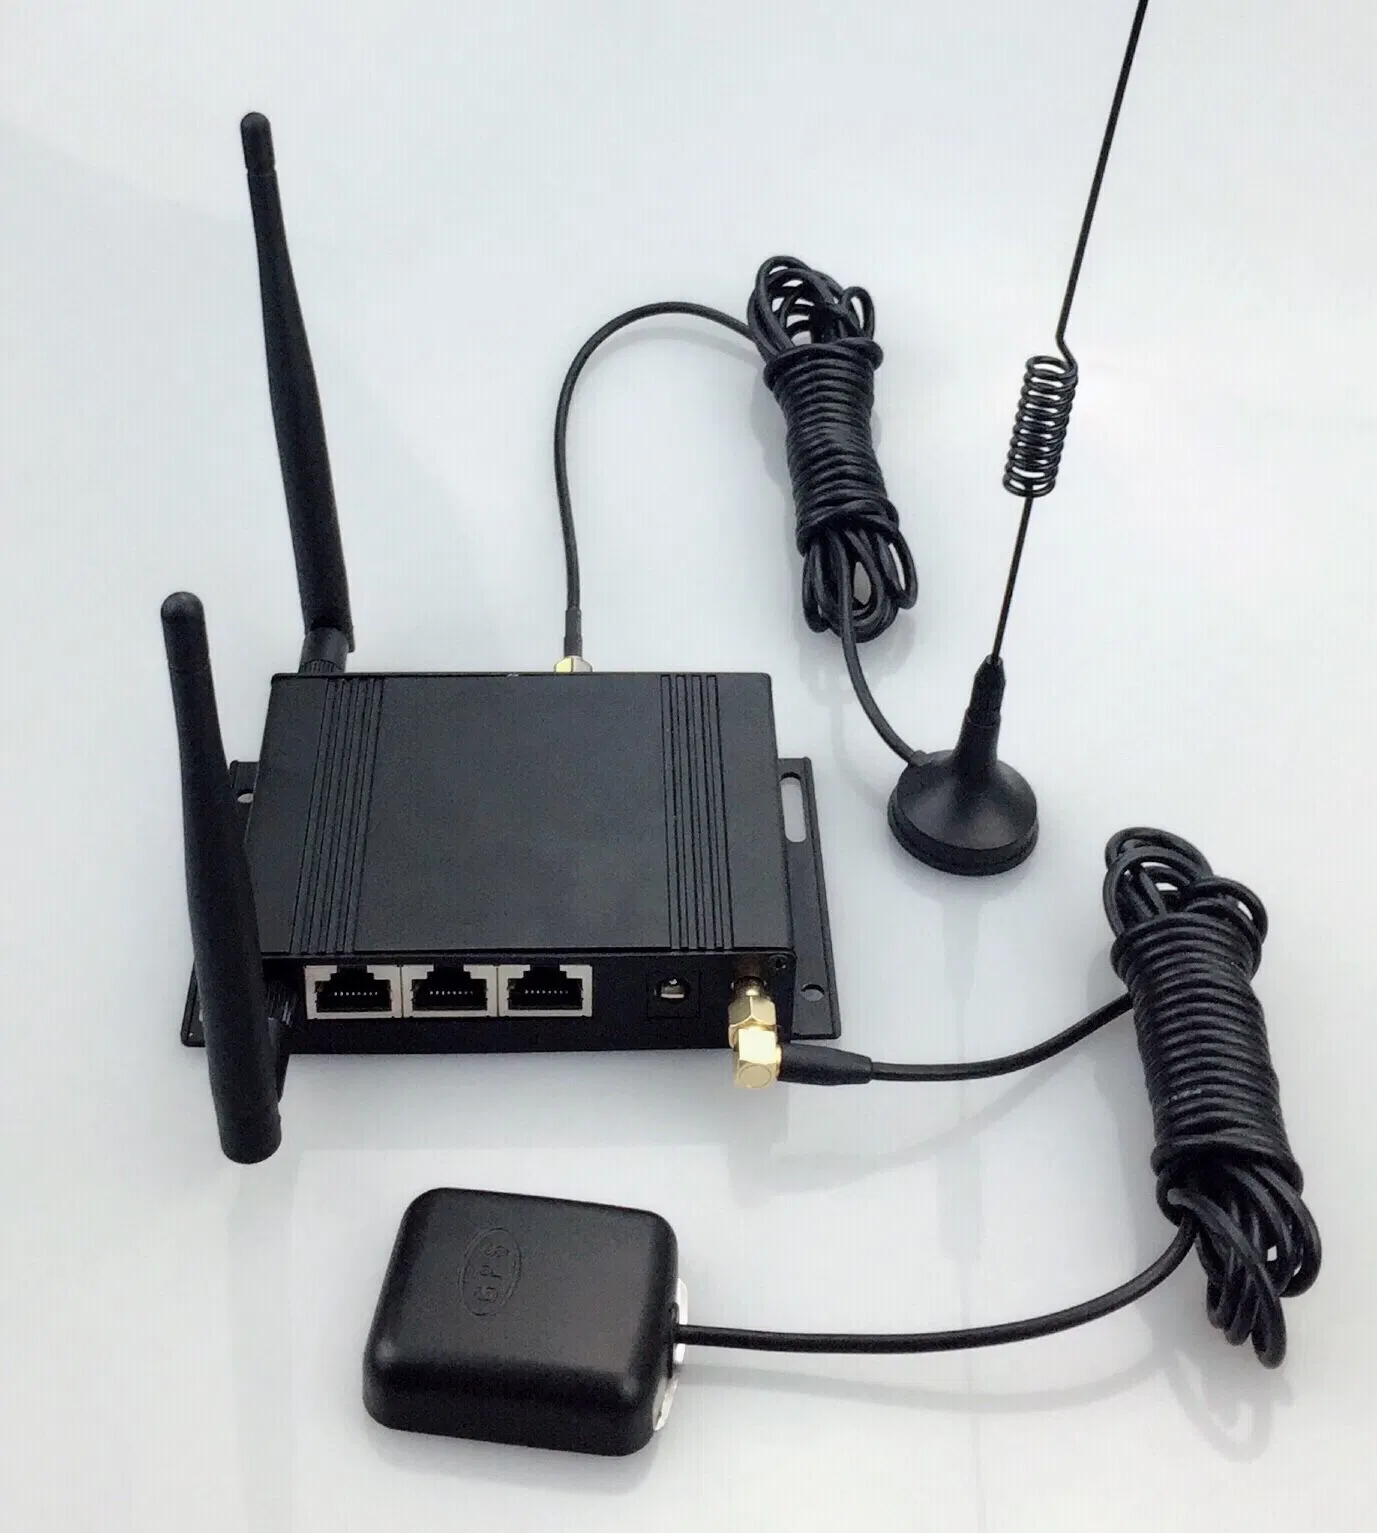 Um roteador WiFi 4G Industrial 12V para automóvel router WiFi RJ45 com 3G/4G Lte dentro do módulo sem fio